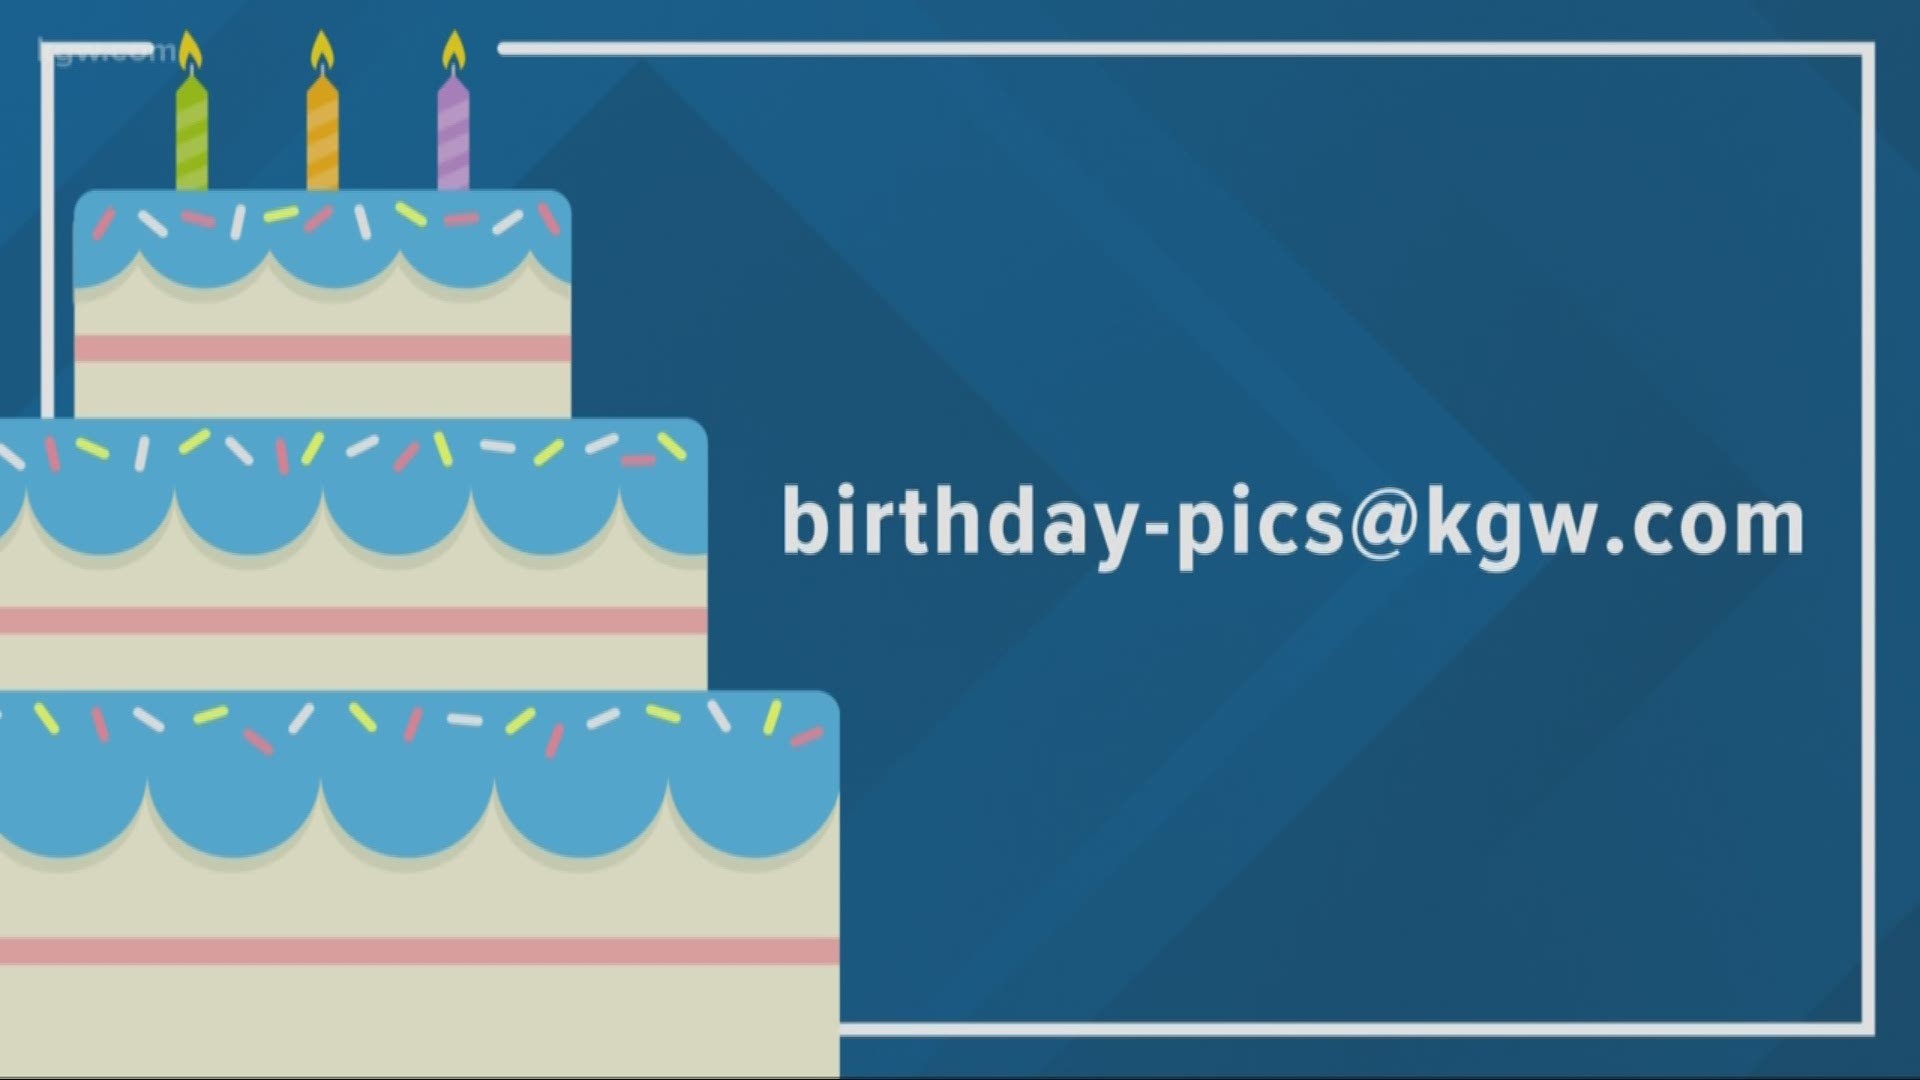 KGW viewer birthdays: 12-13-18